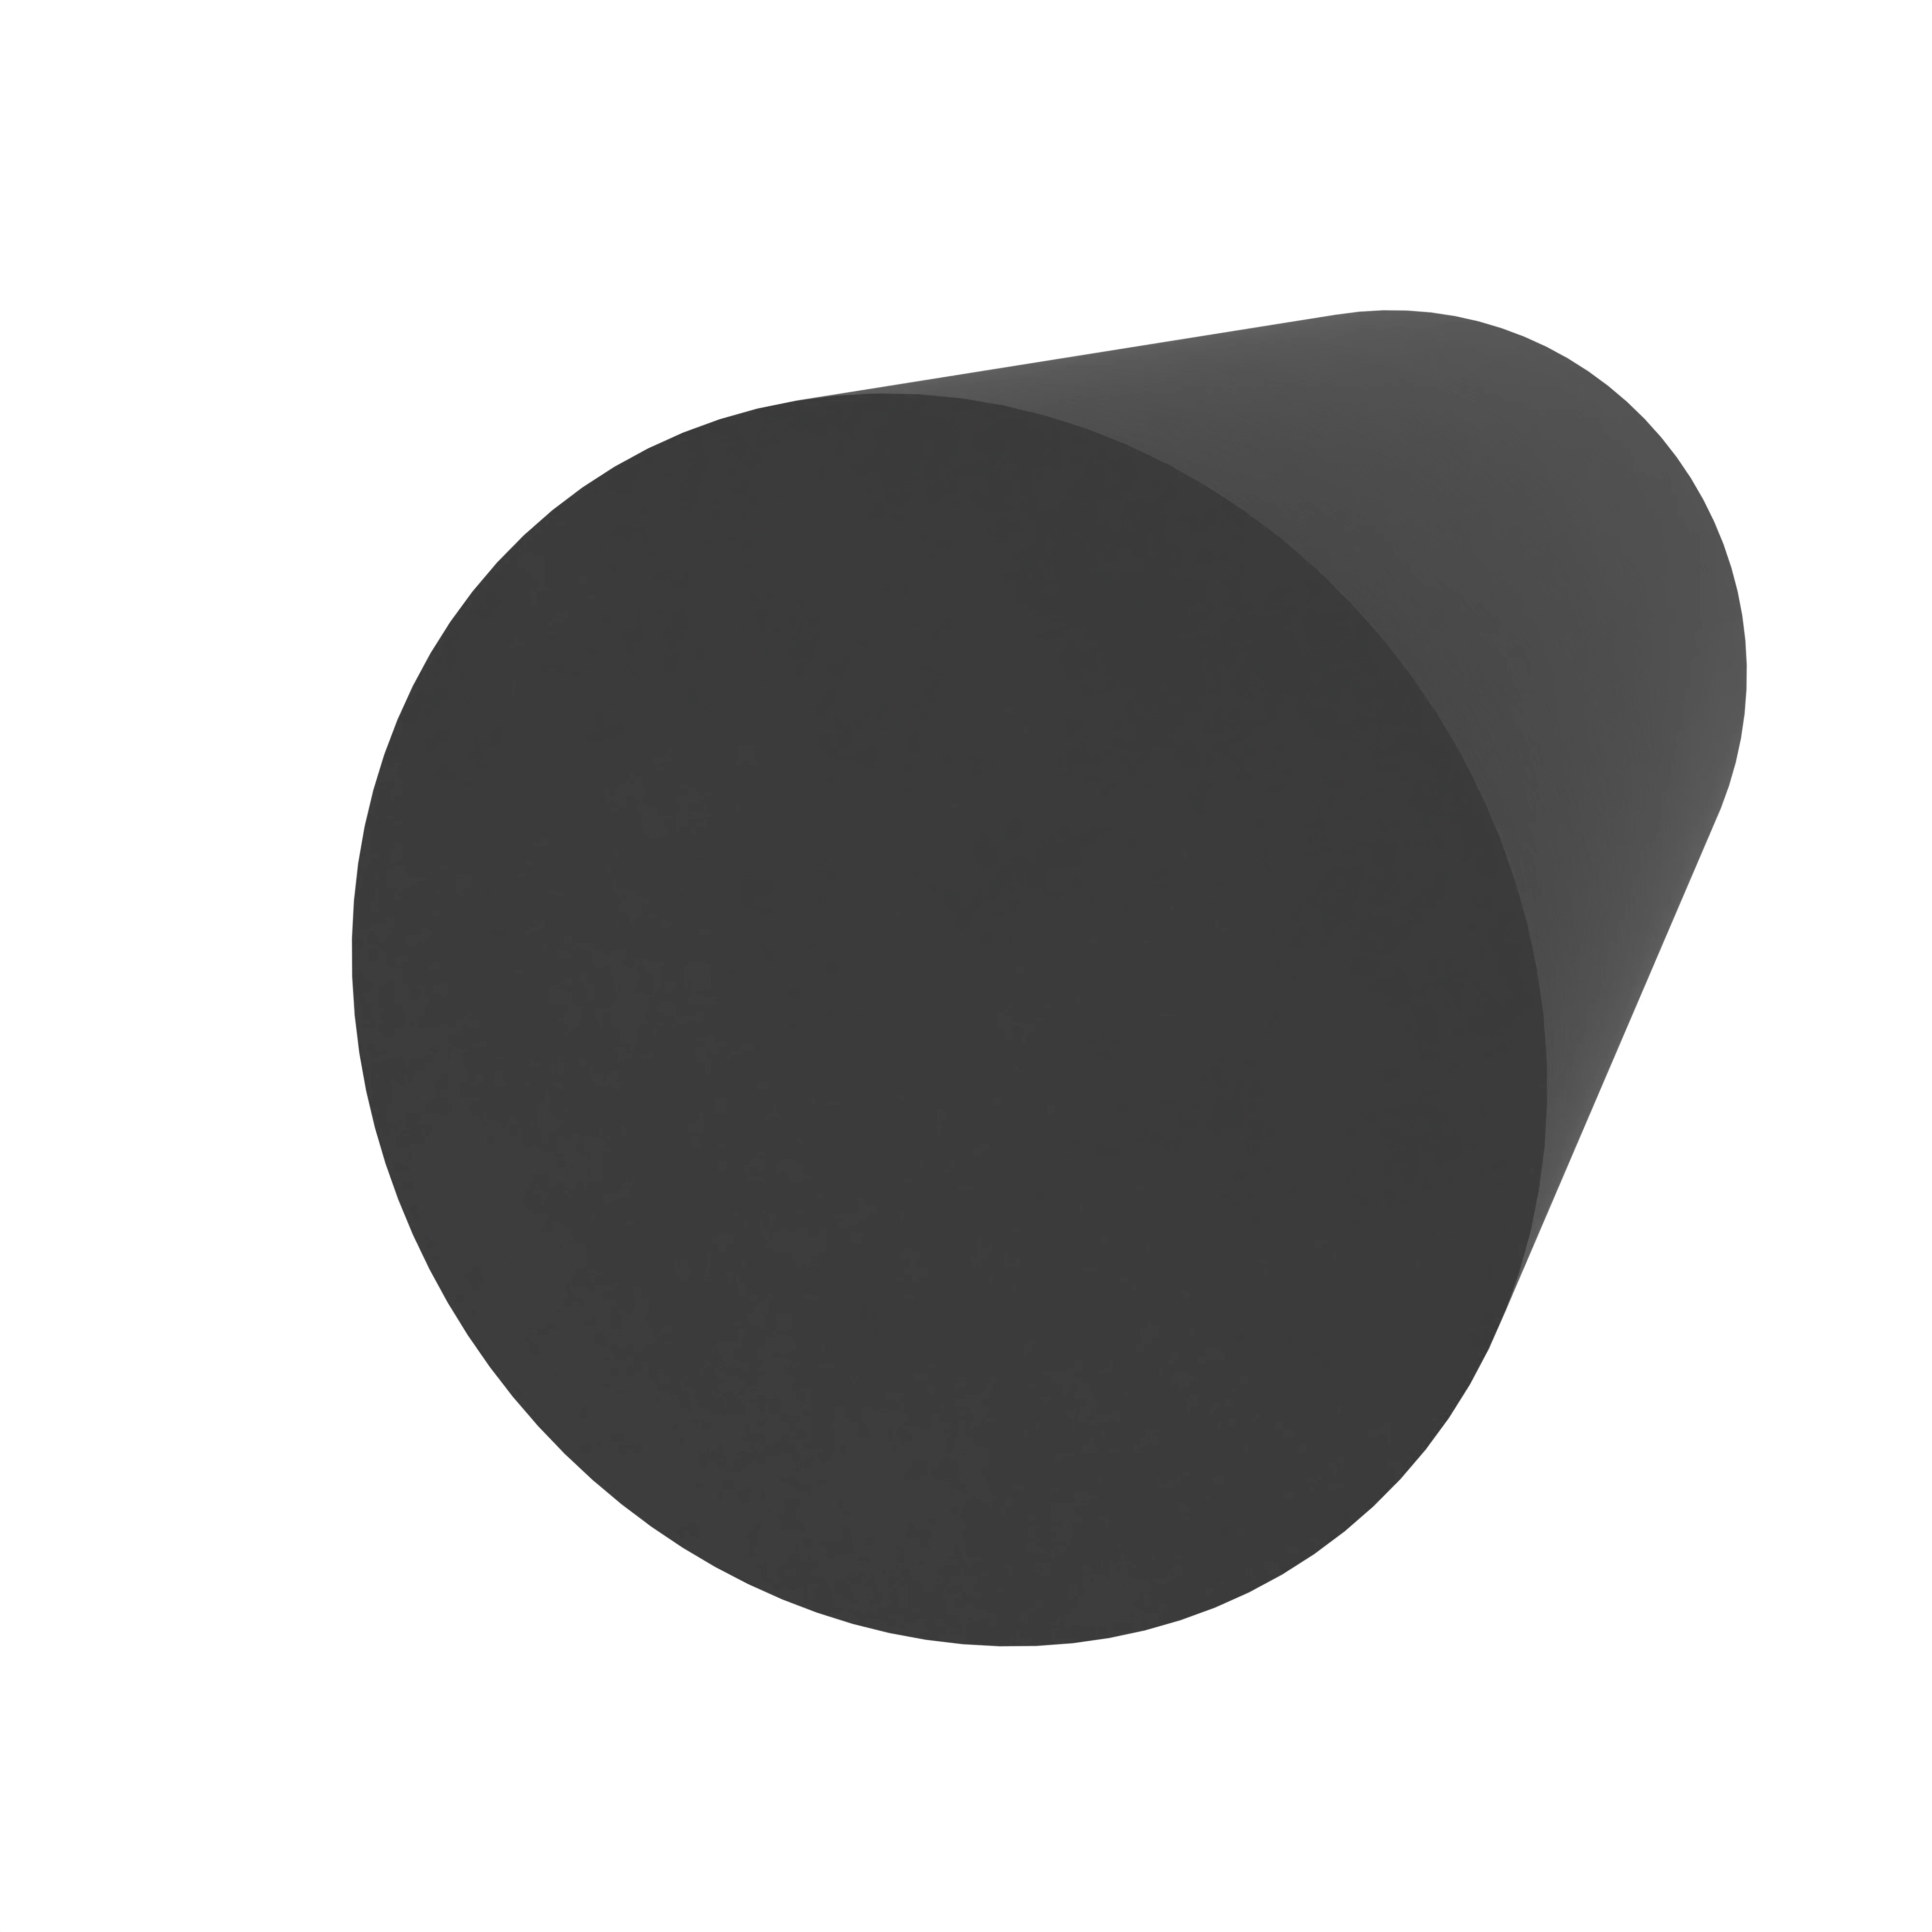 Moosgummidichtung rund | 7 mm Durchmesser | Farbe: schwarz